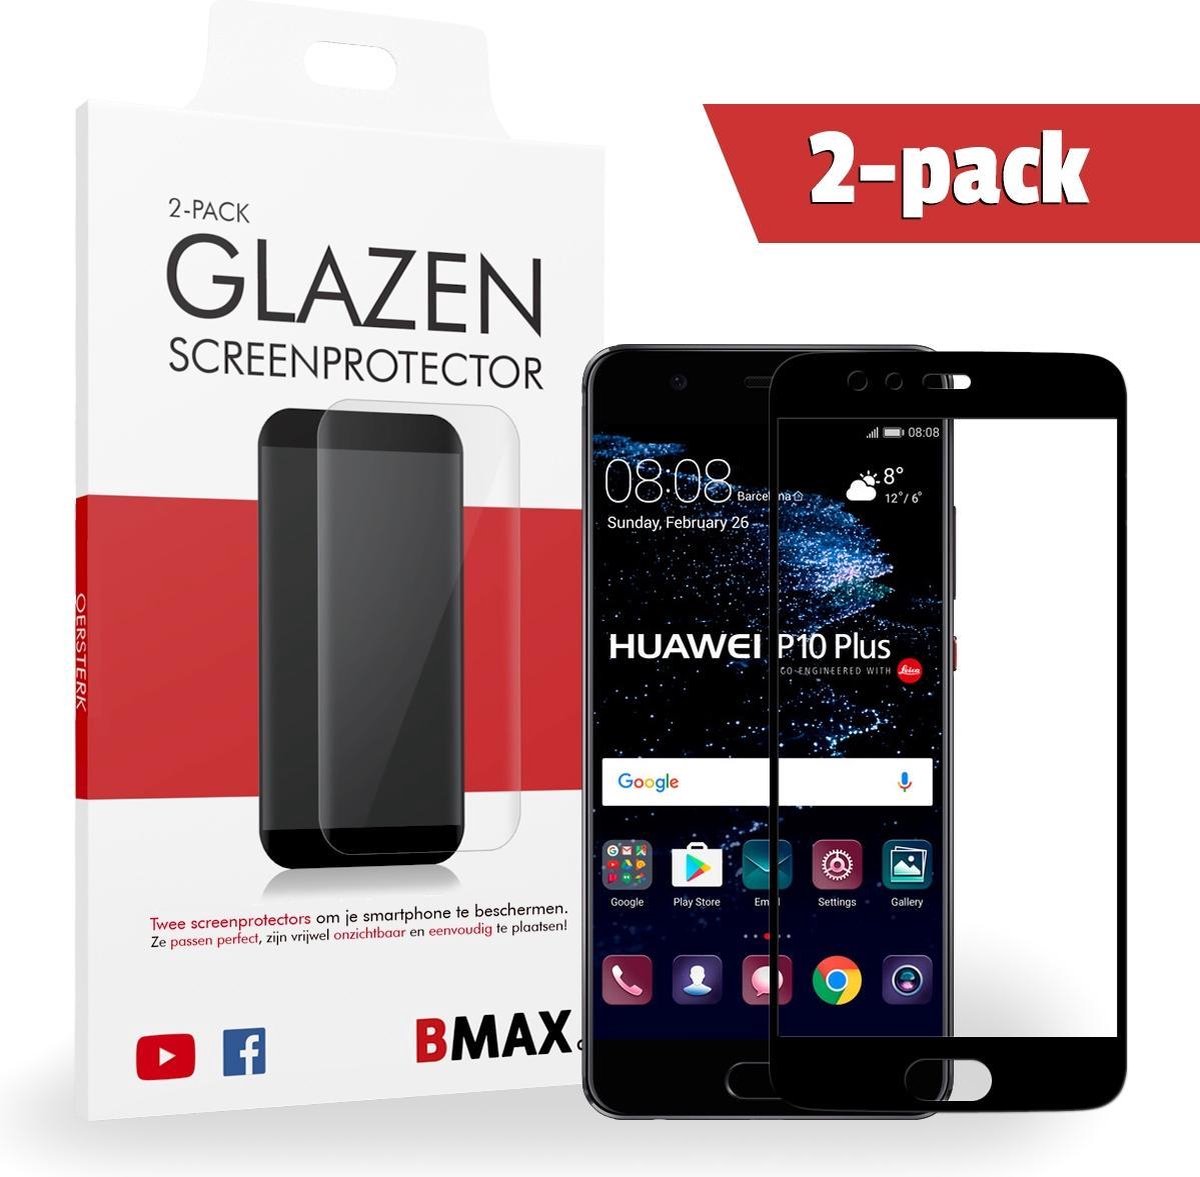 2-pack Bmax Huawei P10 Plus Screenprotector - Glass - Full Cover 5d - Black